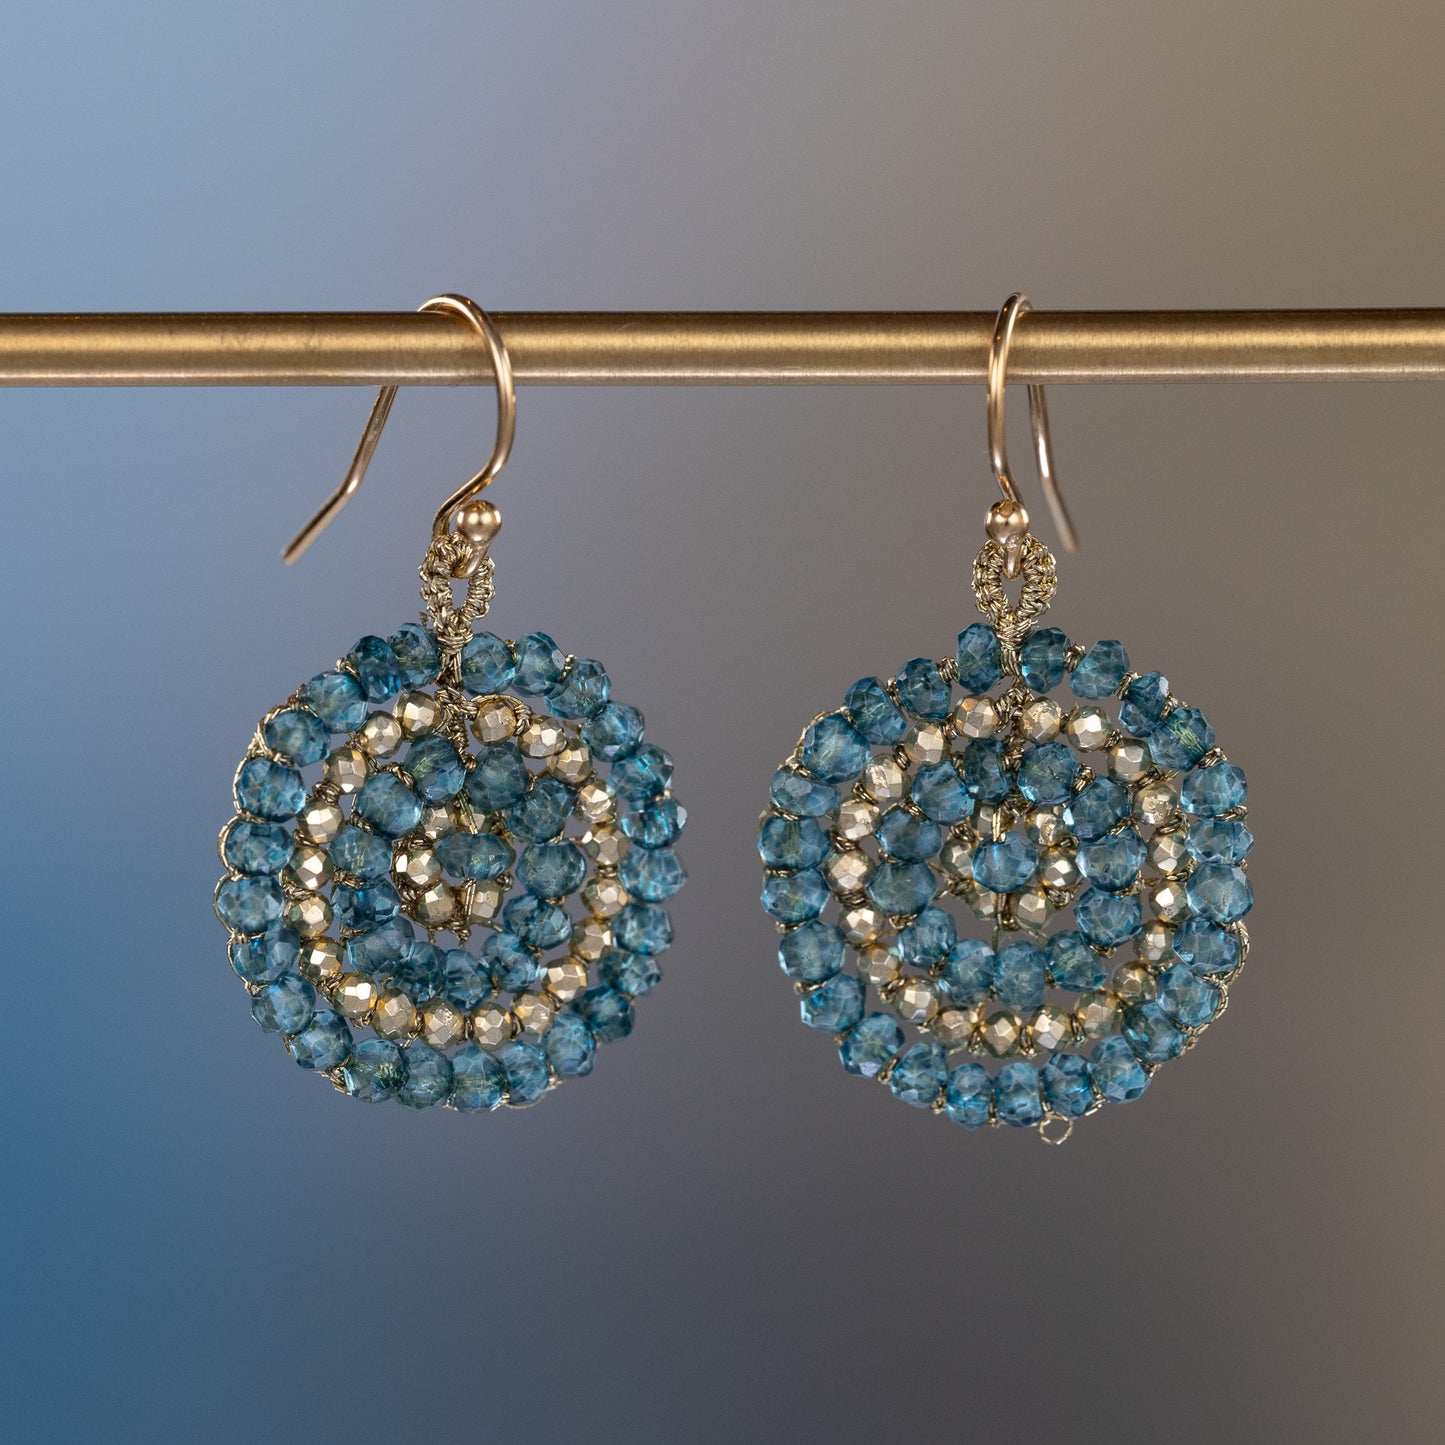 Danielle Welmond Woven London Blue Quartz and Pyrite Coin Earrings